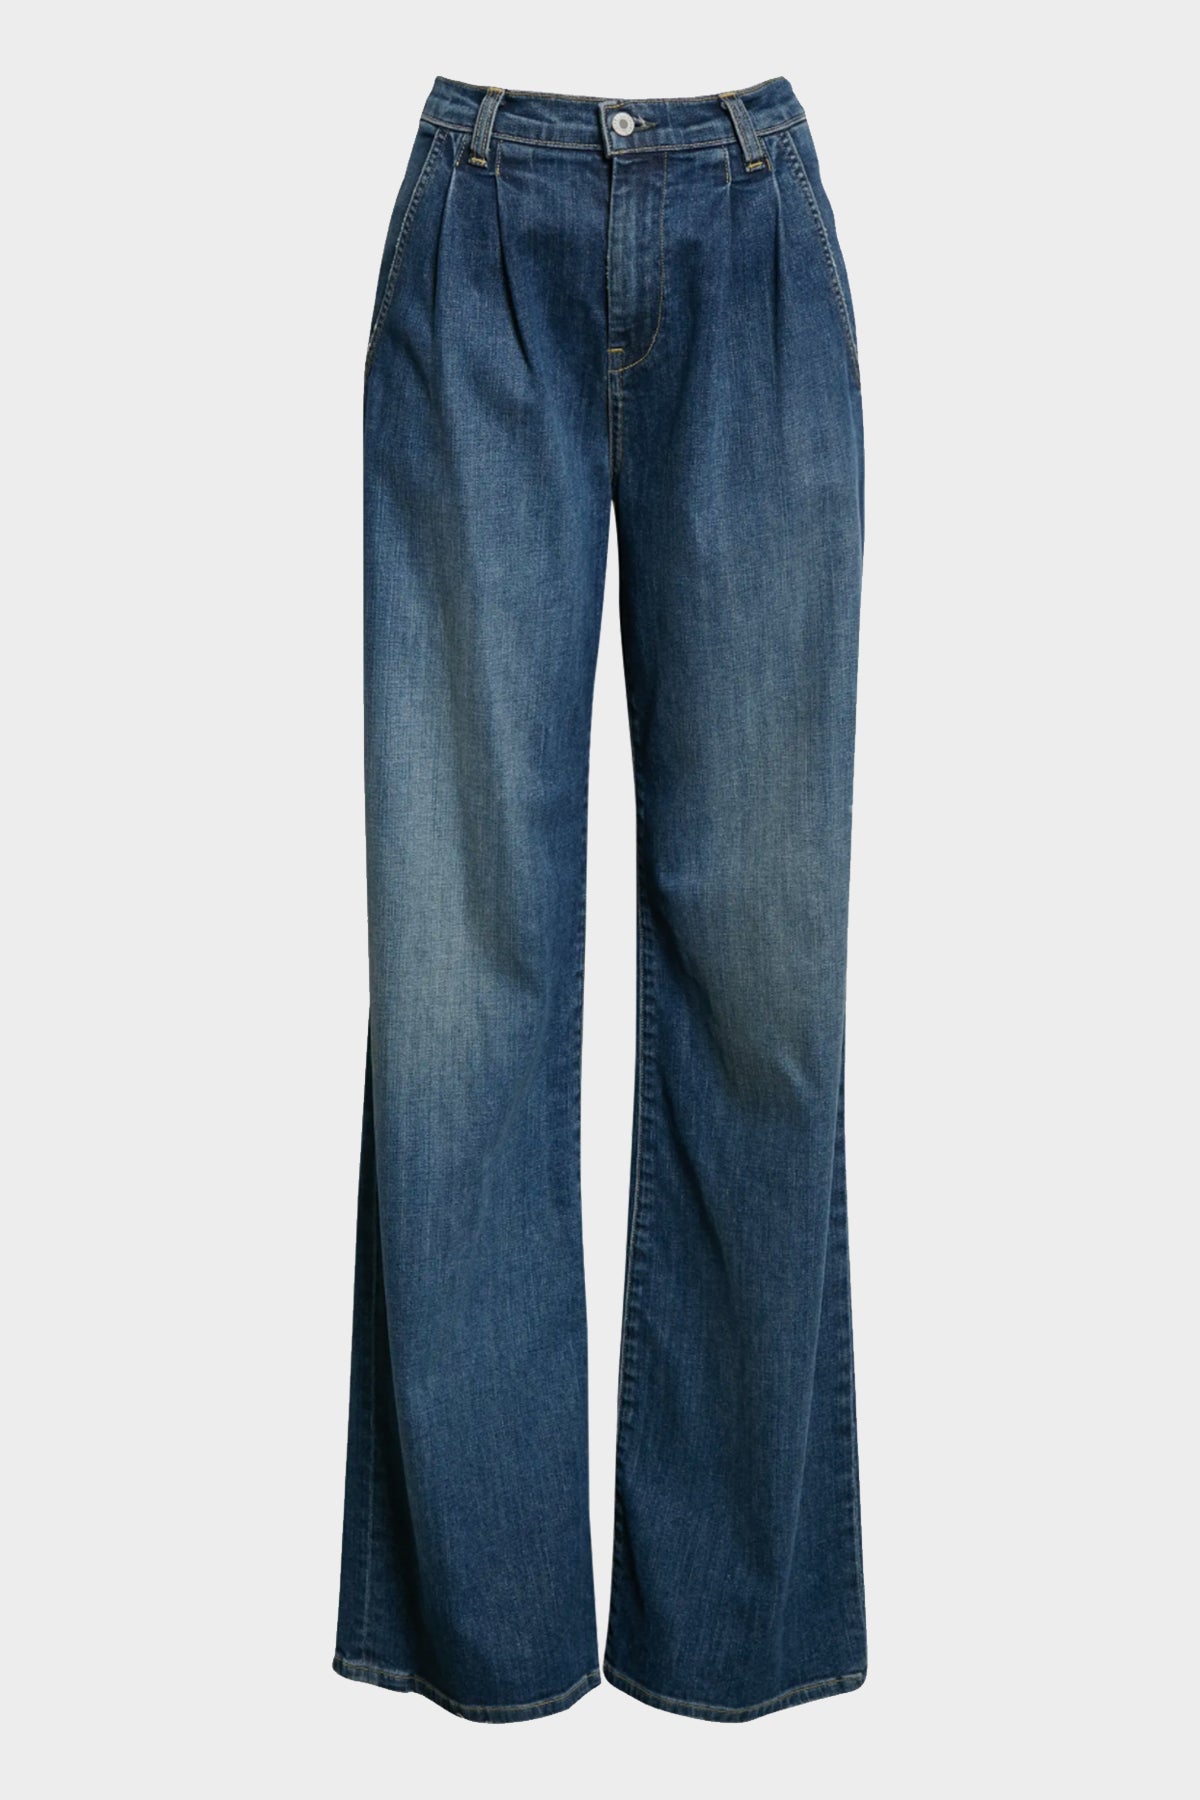 Flora Trouser Jean in Classic Wash - shop-olivia.com